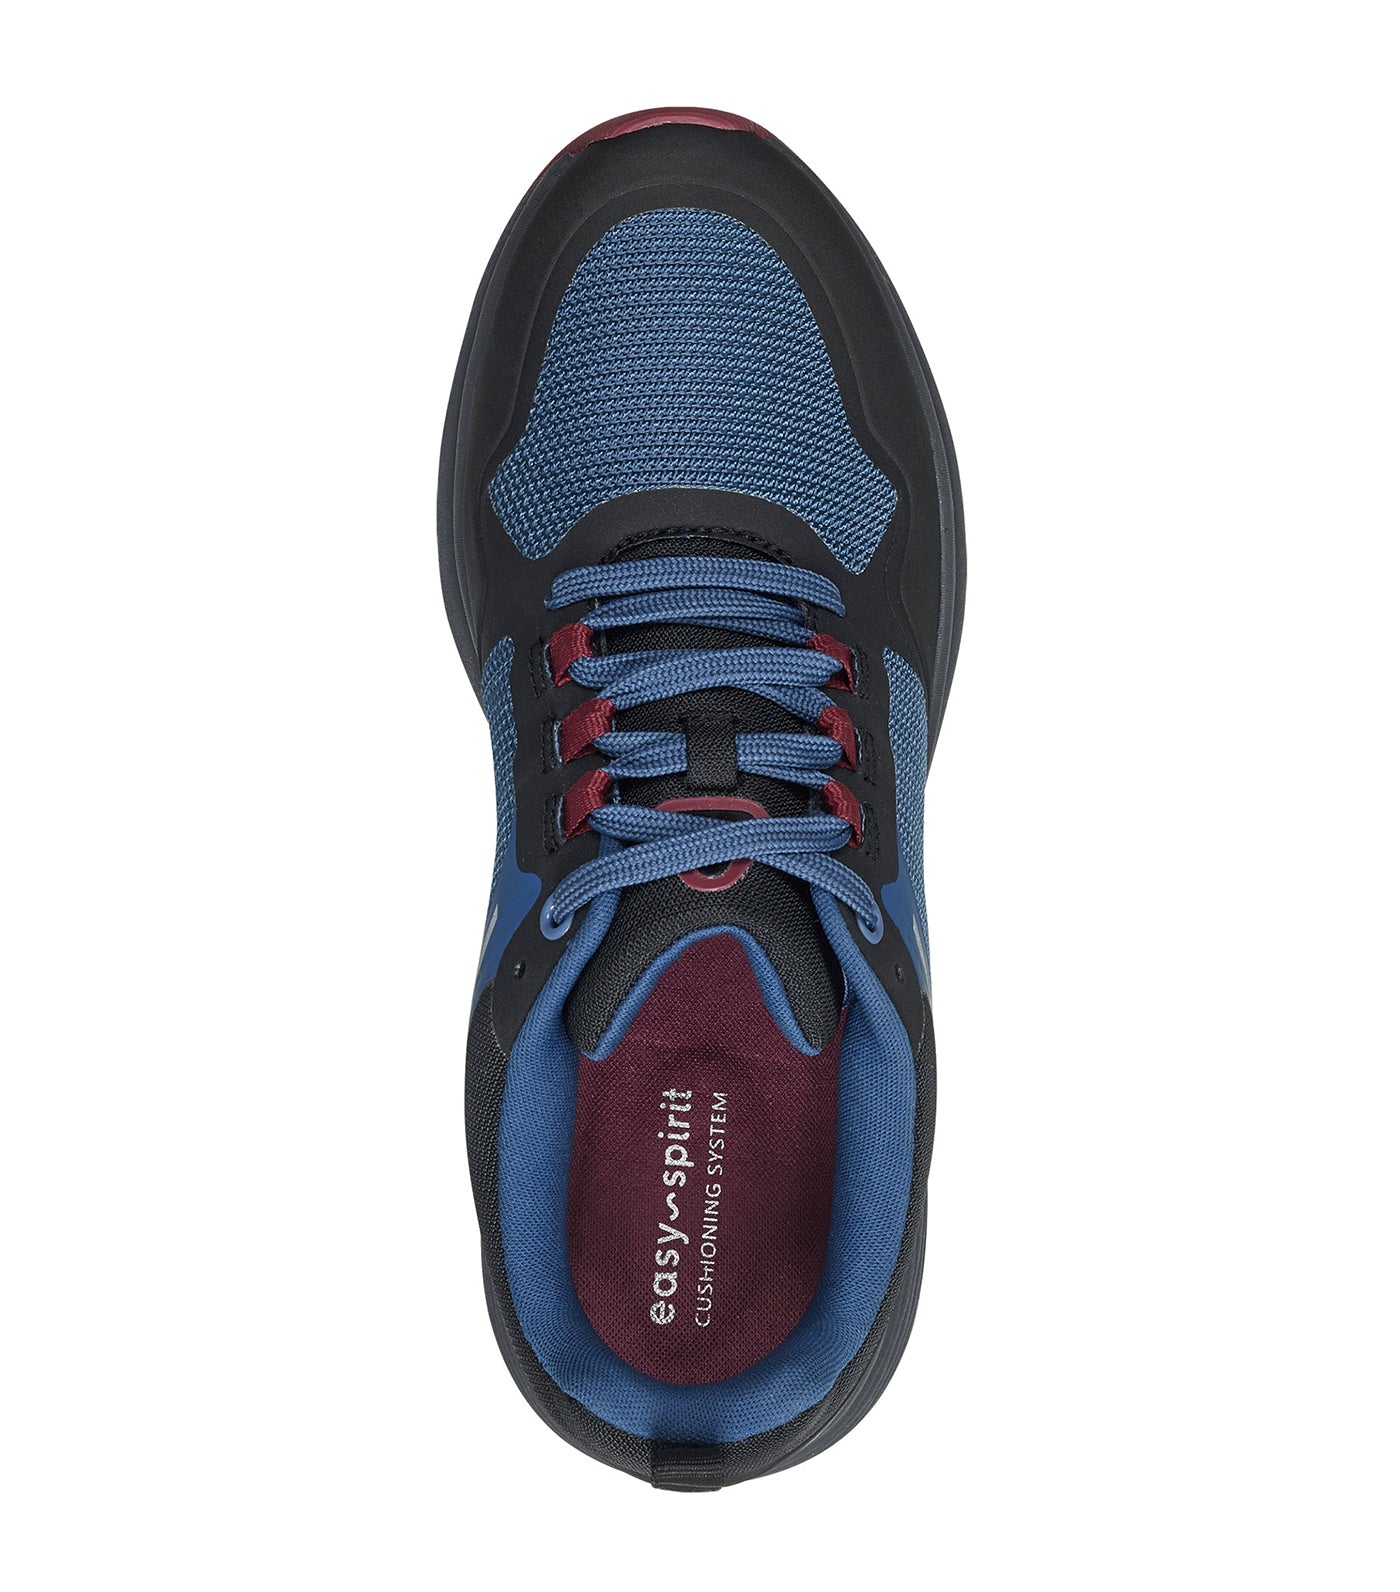 Skyview Water Resistant Walking Shoes Medium Blue